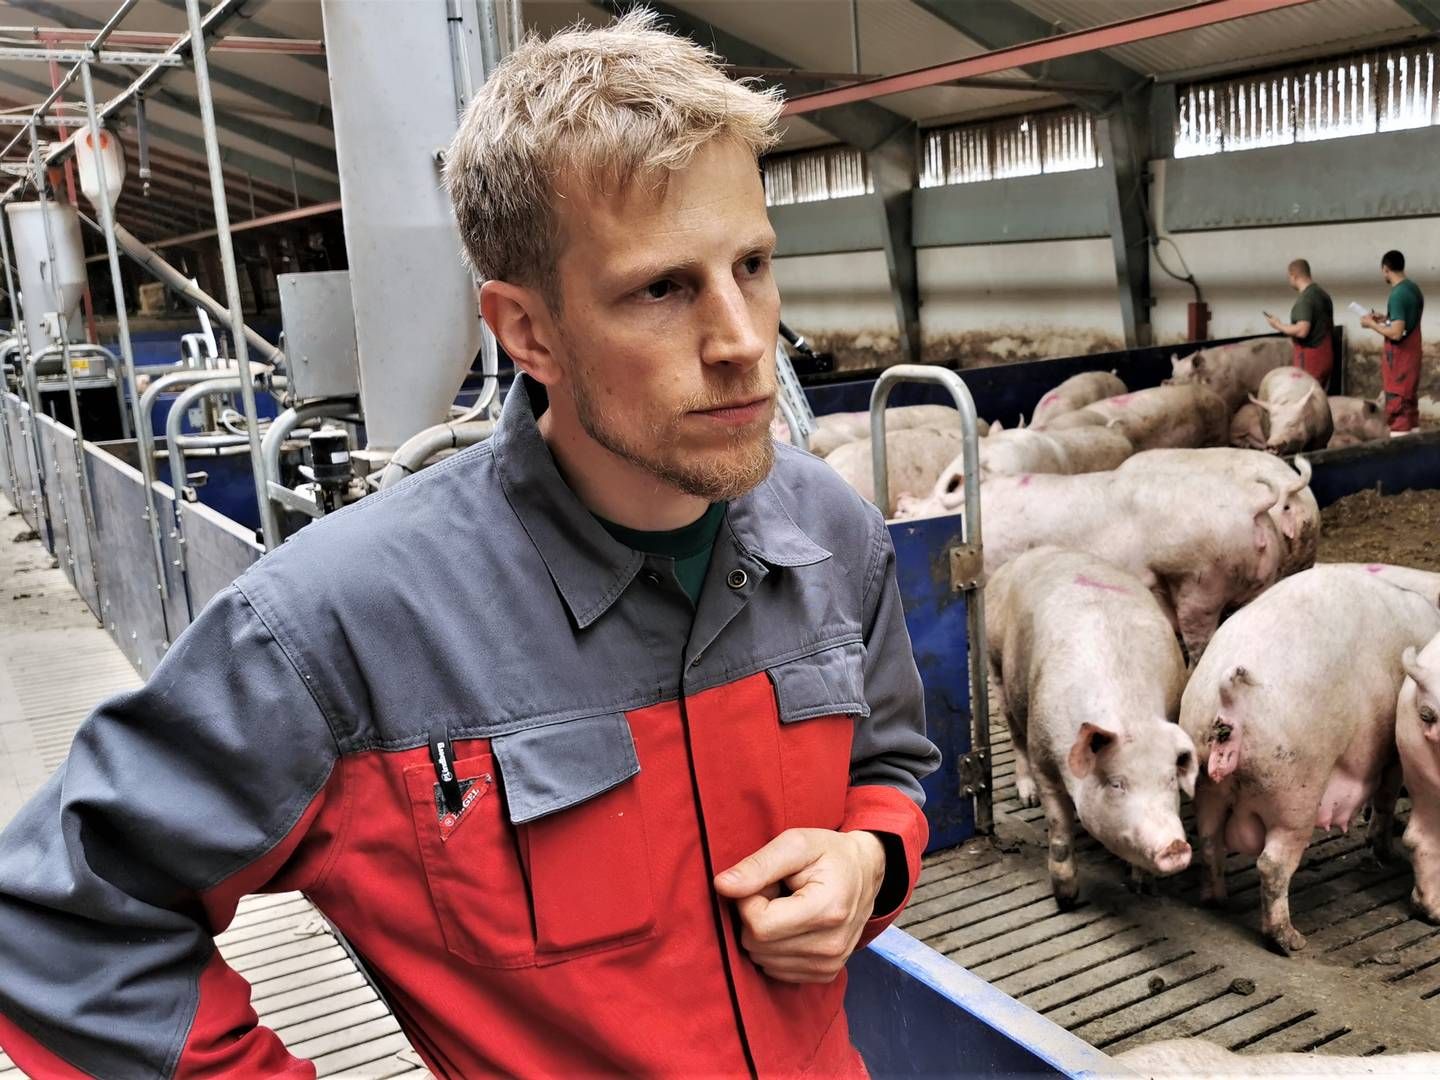 Grundet en lang periode med rentable svinepriser bekymrer det umiddelbart ikke formanden for Danske Svineproducenter, Jeppe Bloch Nielsen, at noteringen nu gør svineproduktion til en dårlig forretning. | Foto: Peter Høyer/Watch Medier